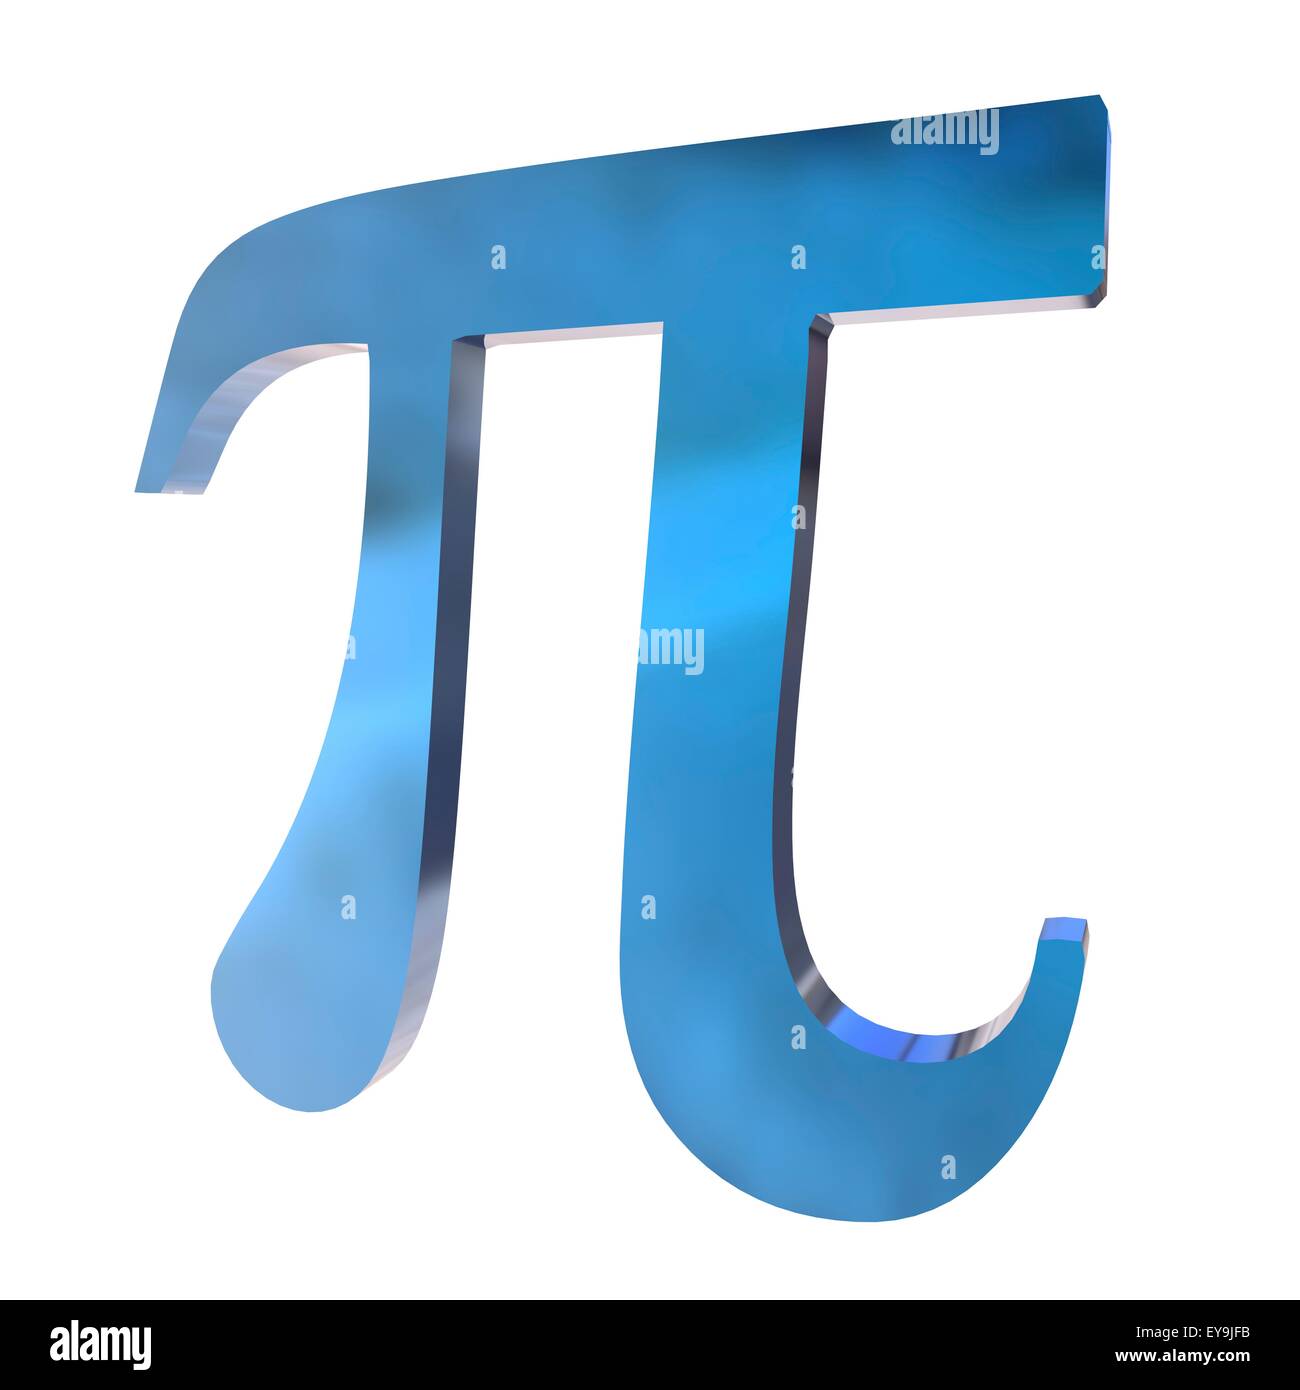 Pi es la decimosexta letra del alfabeto griego y el símbolo utilizado en matemáticas para representar una constante â€" la proporción de Foto de stock